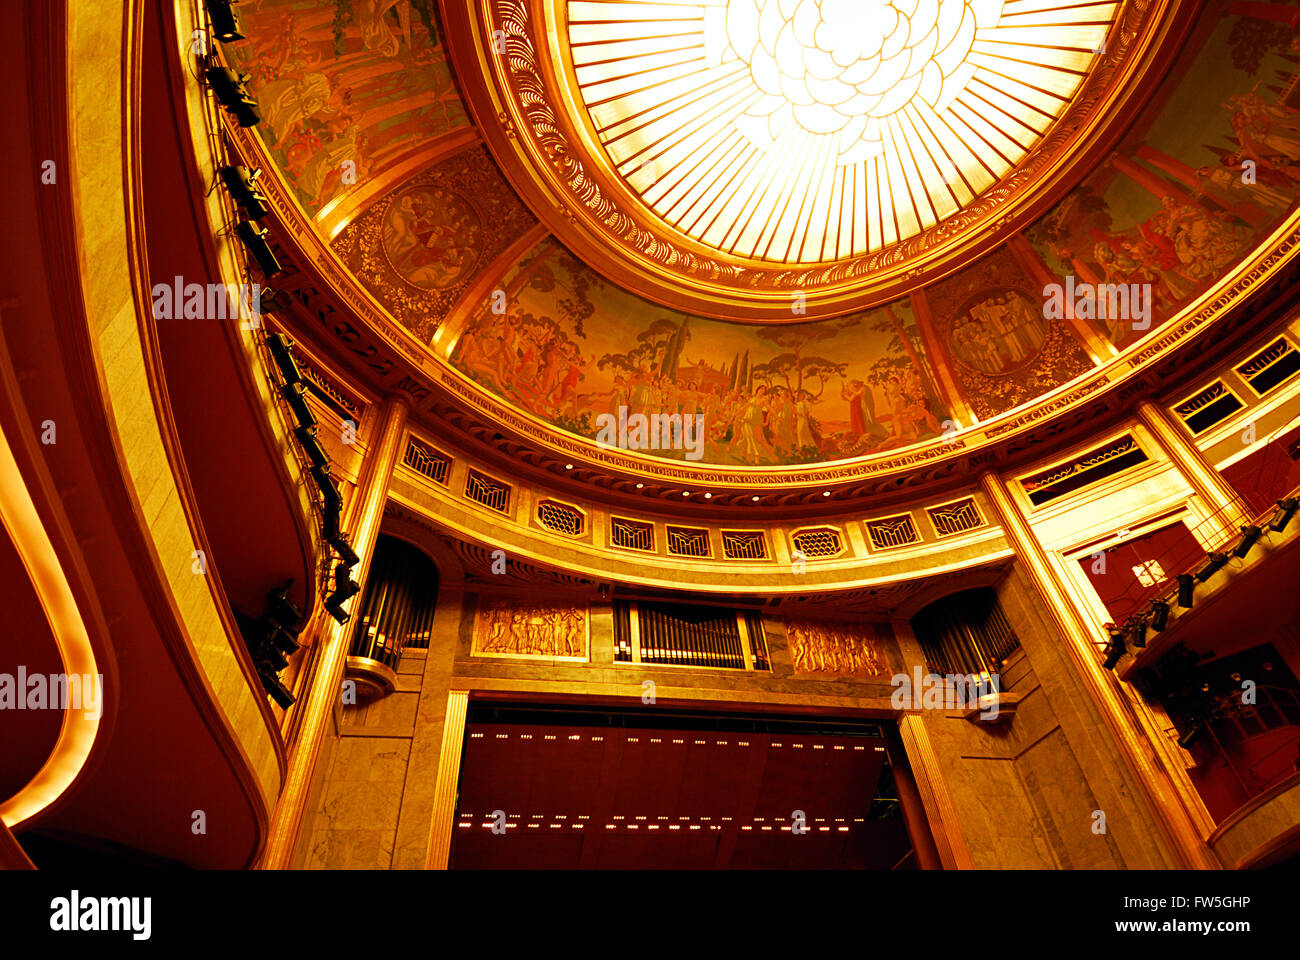 Théâtre des Champs-Élysées - Paris. Inside view of auditorium, with glass dome & organ pipes. Stock Photo